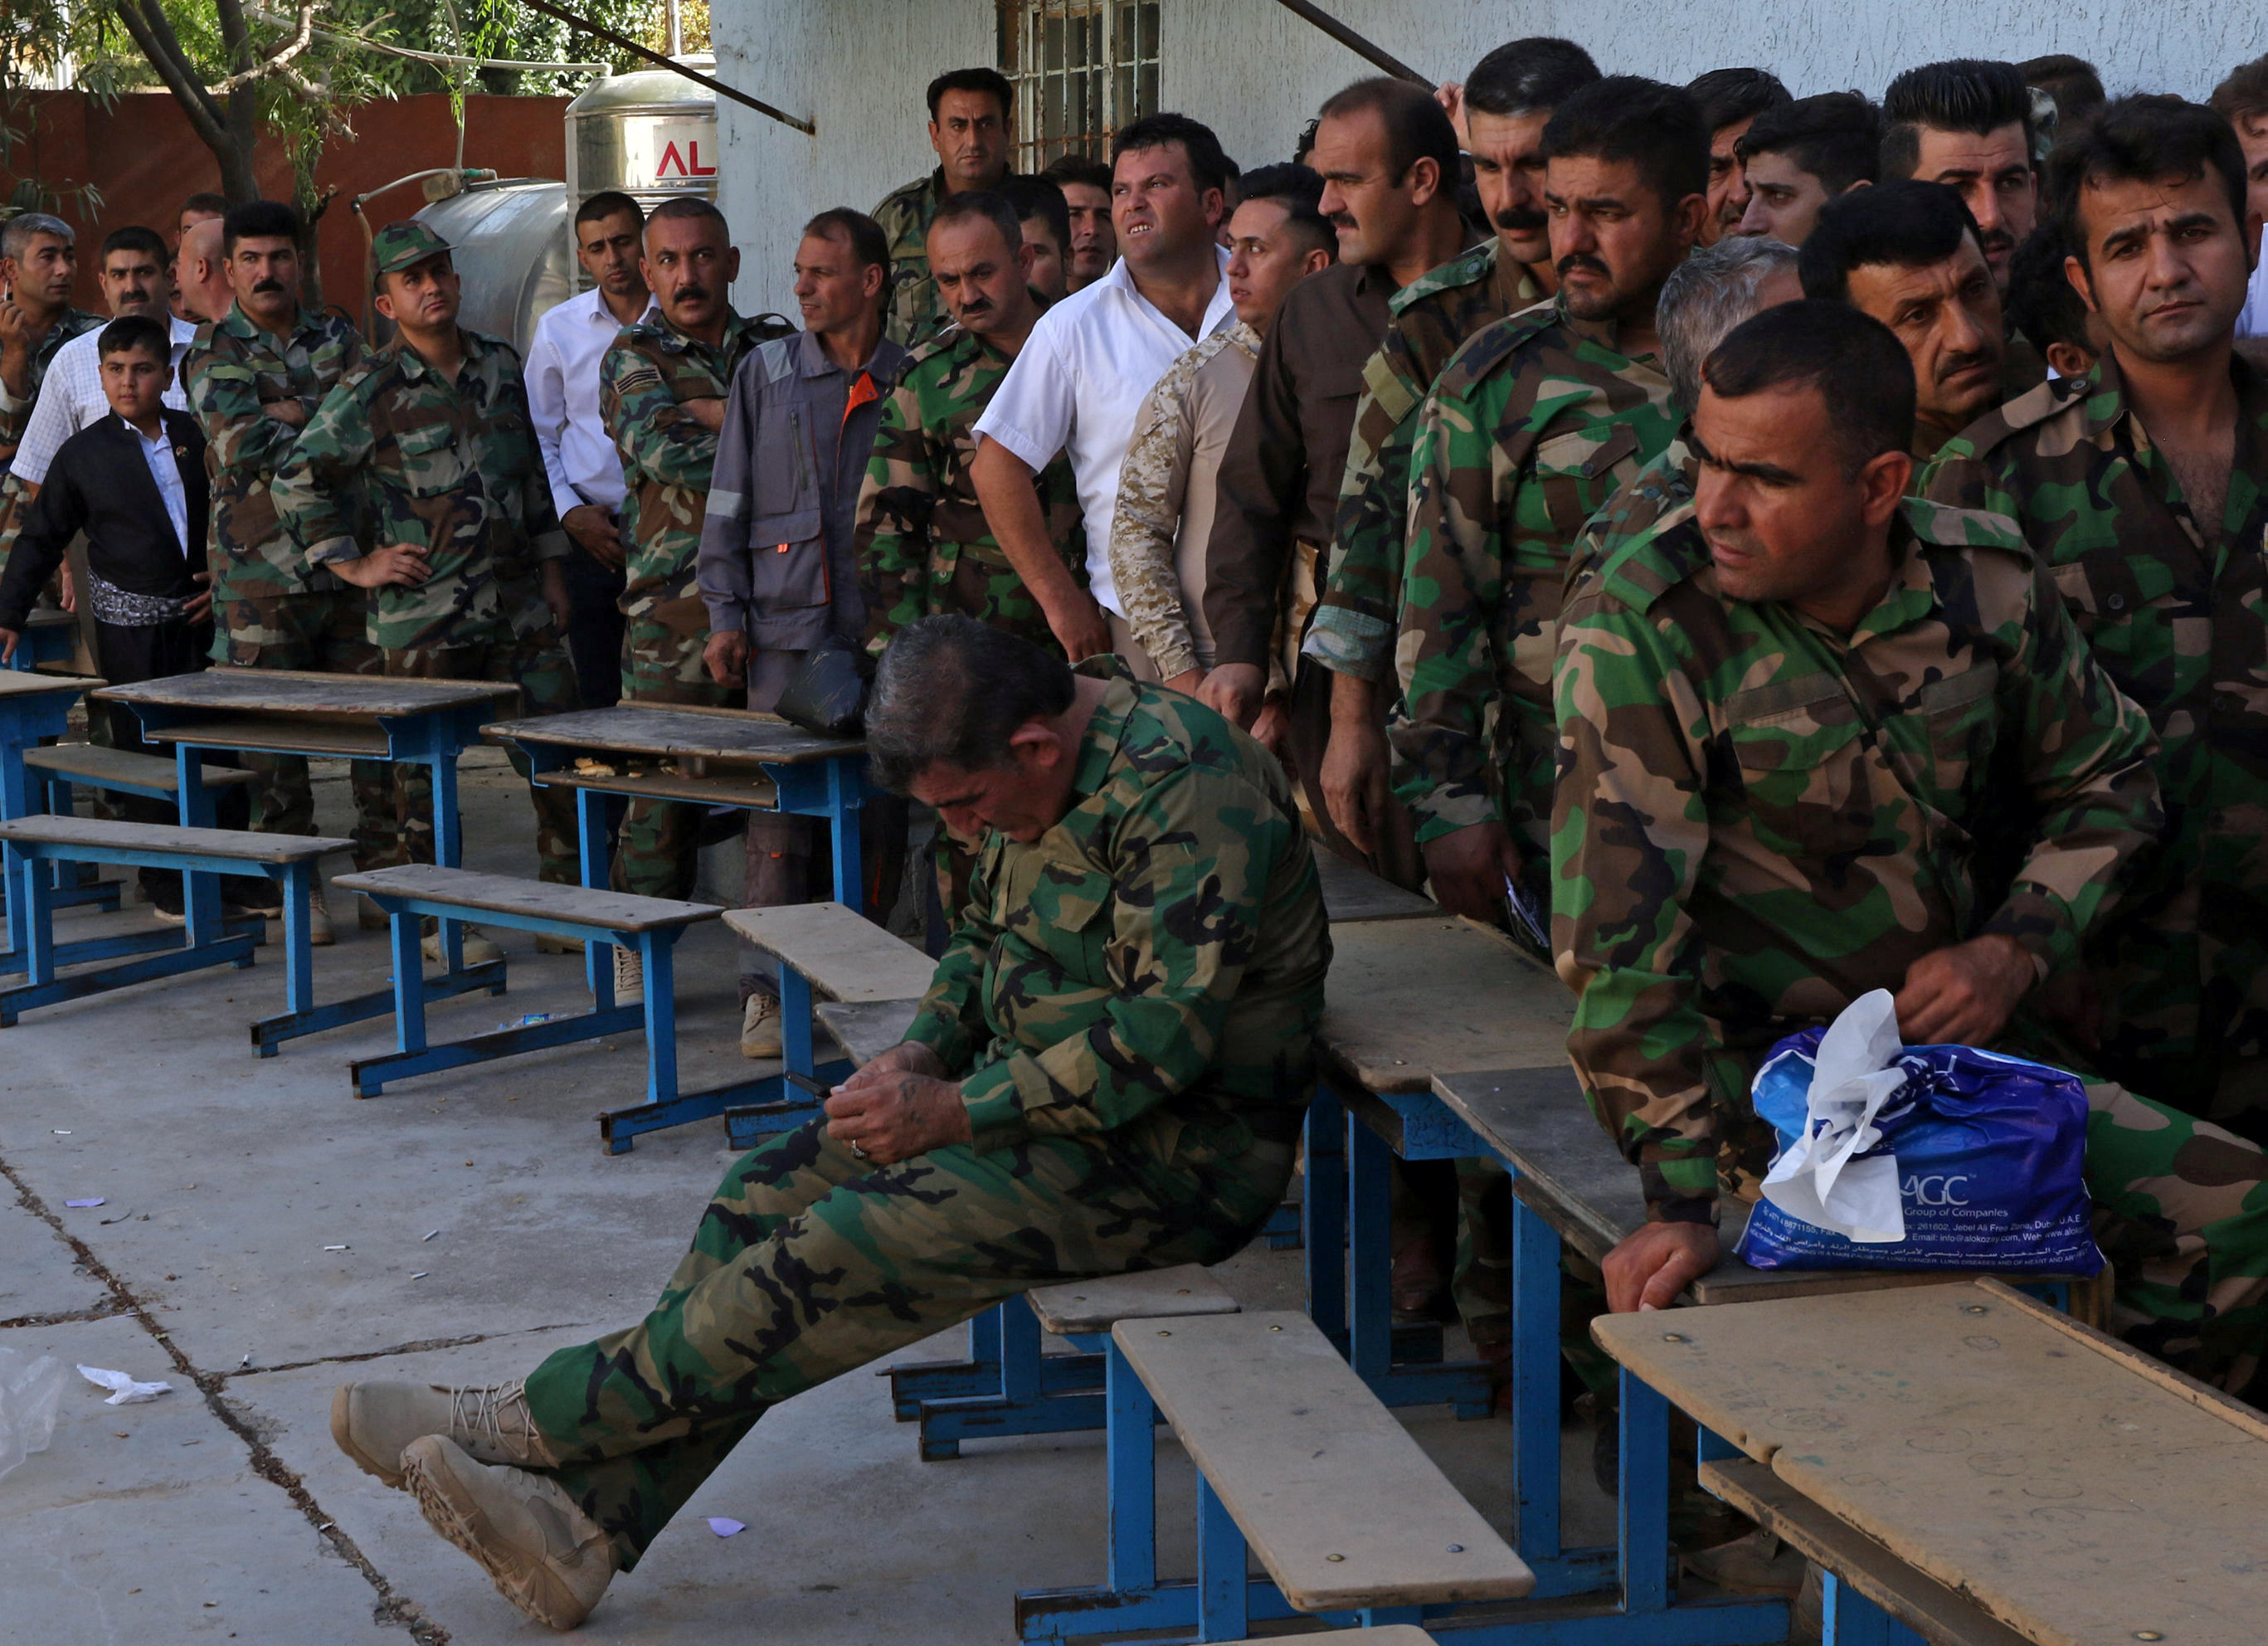 يصطف أفراد القوات العسكرية الكردية فى البشمرجة للتصويت فى الانتخابات البرلمانية فى السليمانية